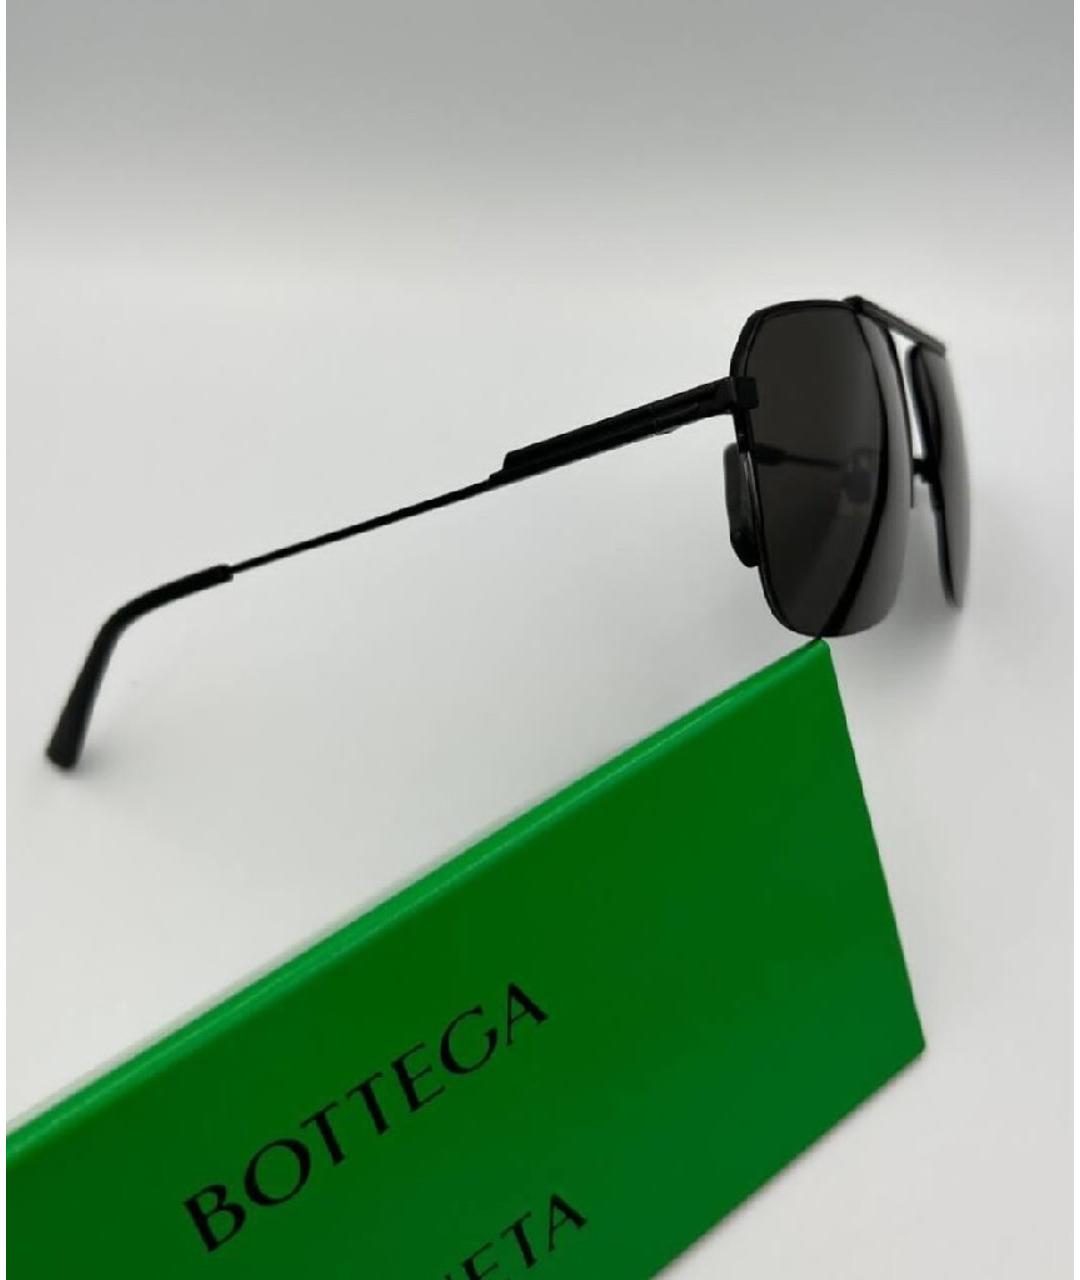 BOTTEGA VENETA Черные металлические солнцезащитные очки, фото 5